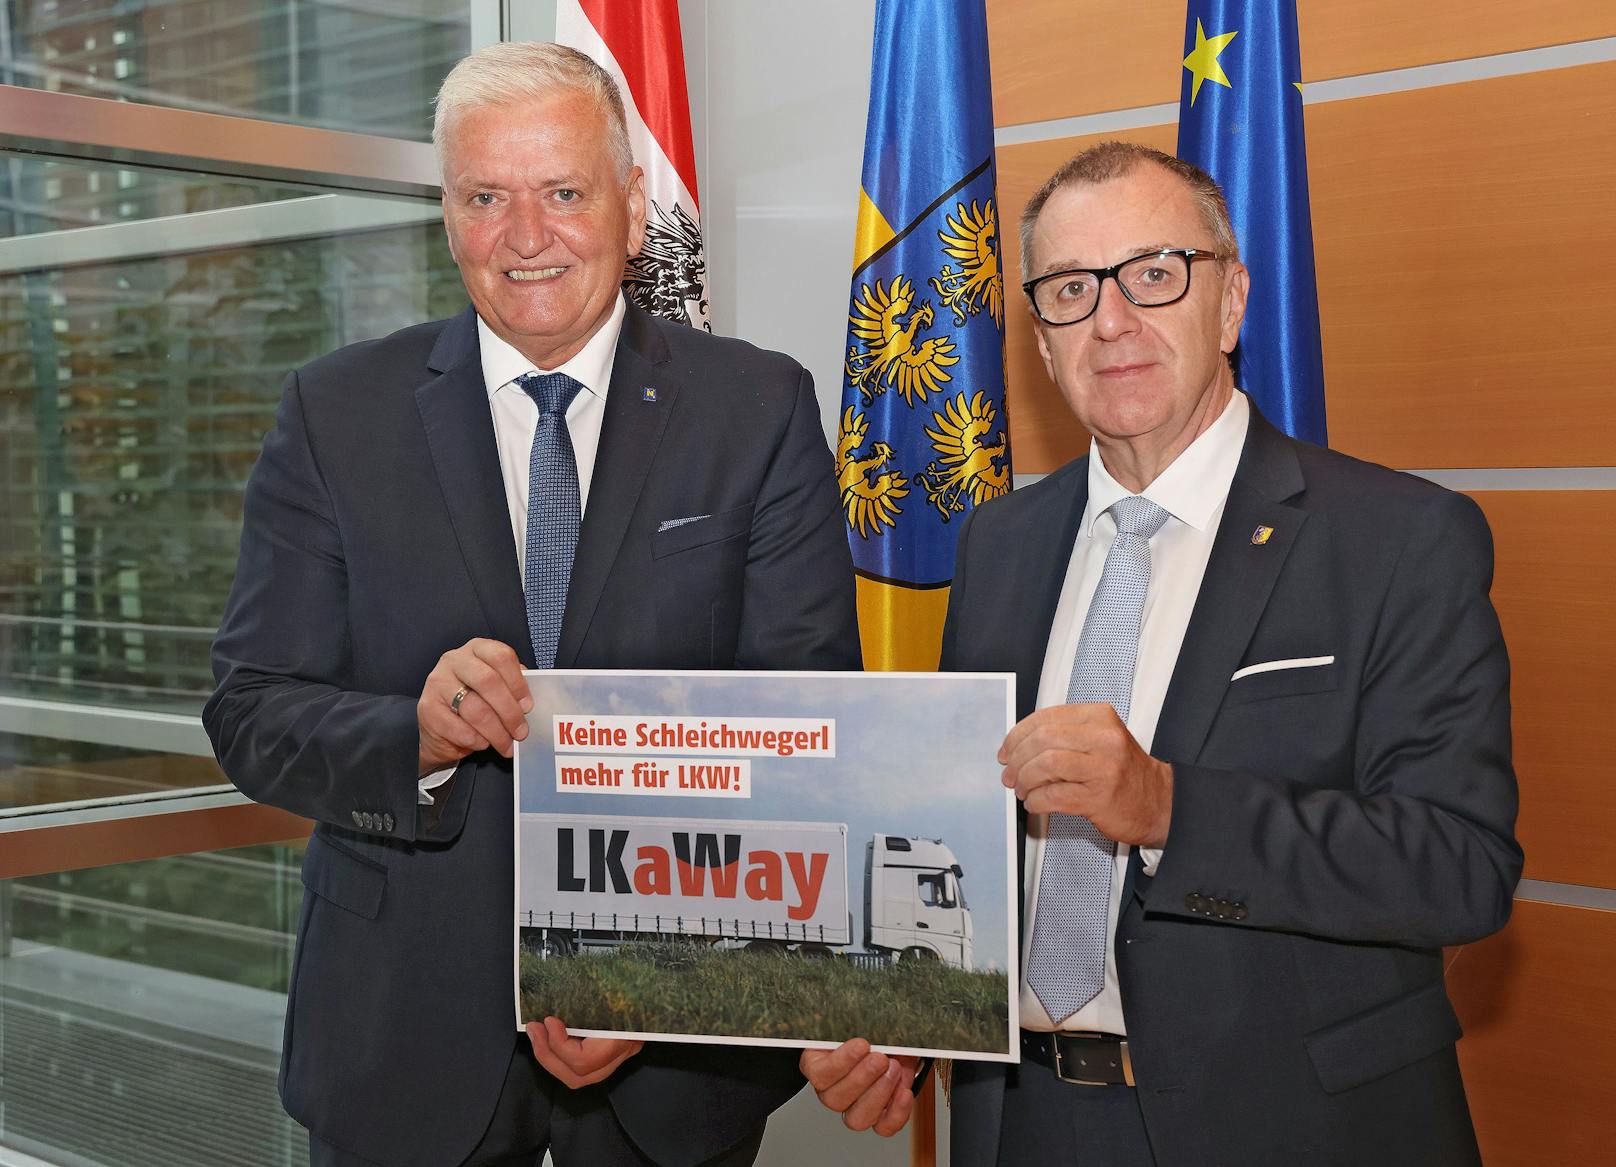 Landesvize Franz Schnabl und NÖ GVV-Präsident Rupert Dworak sprachen zum Thema "Flächendeckende Lkw-Maut"